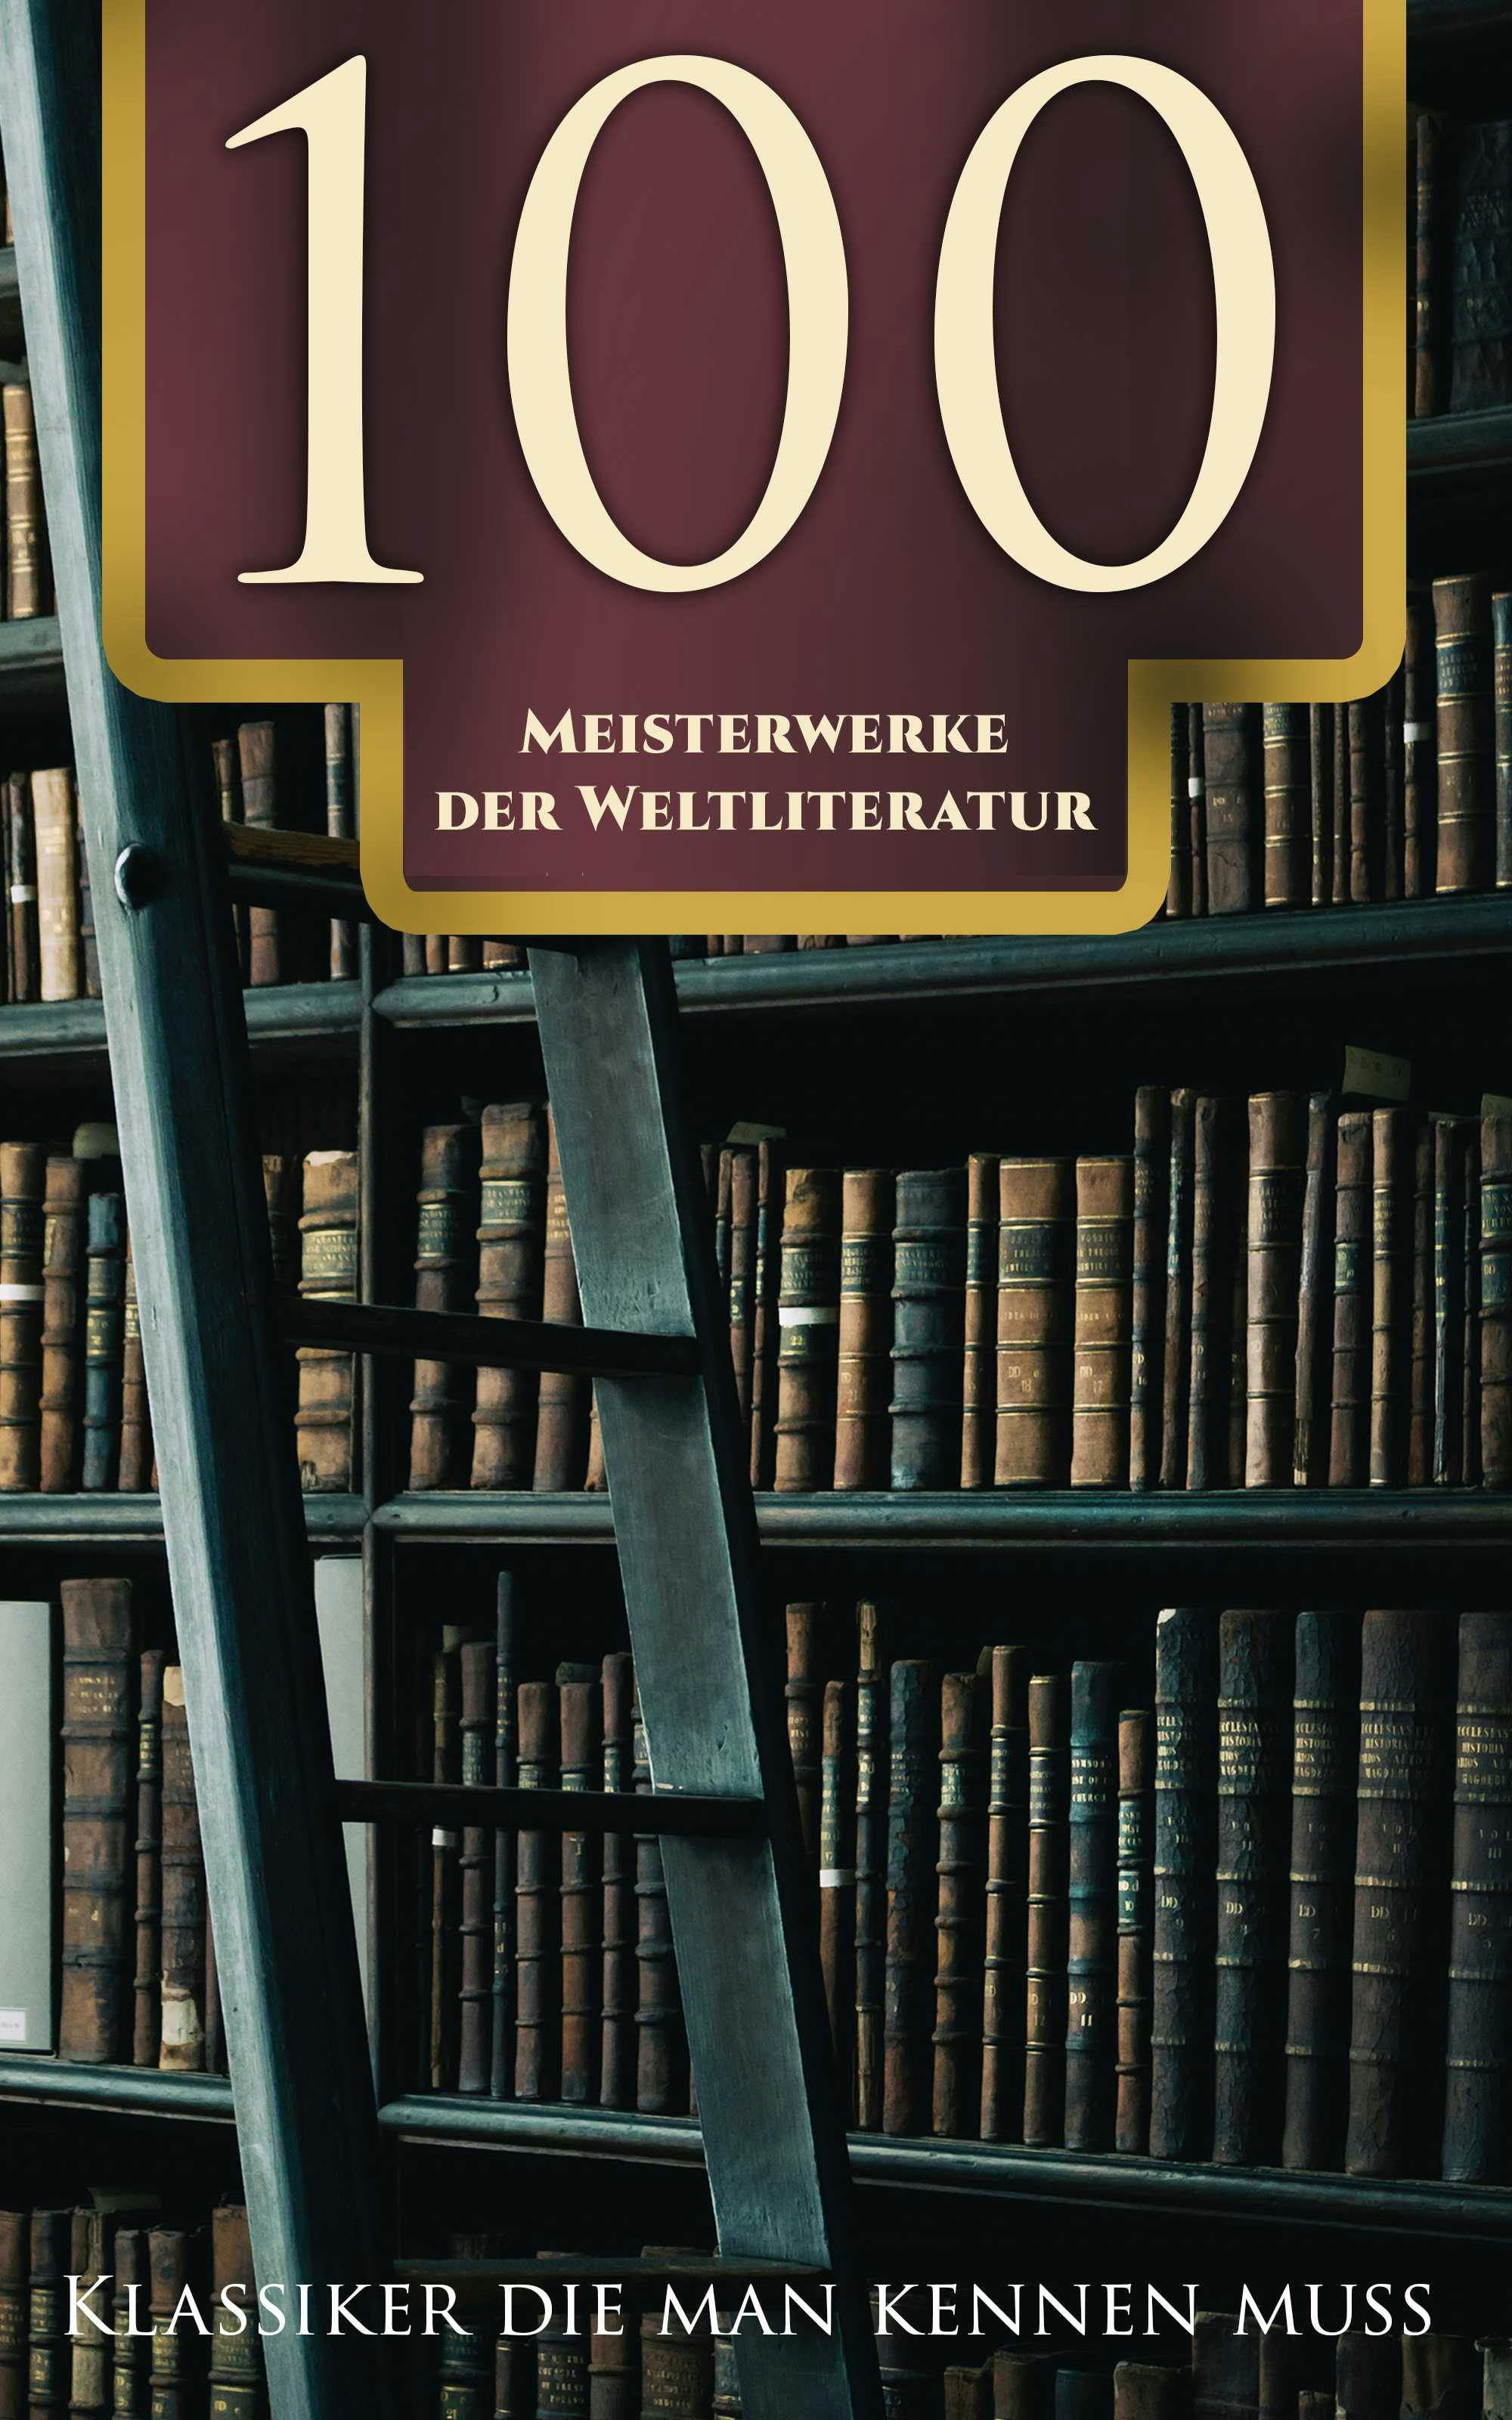 100 Meisterwerke der Weltliterature - Klassiker die man kennen muss - undefined